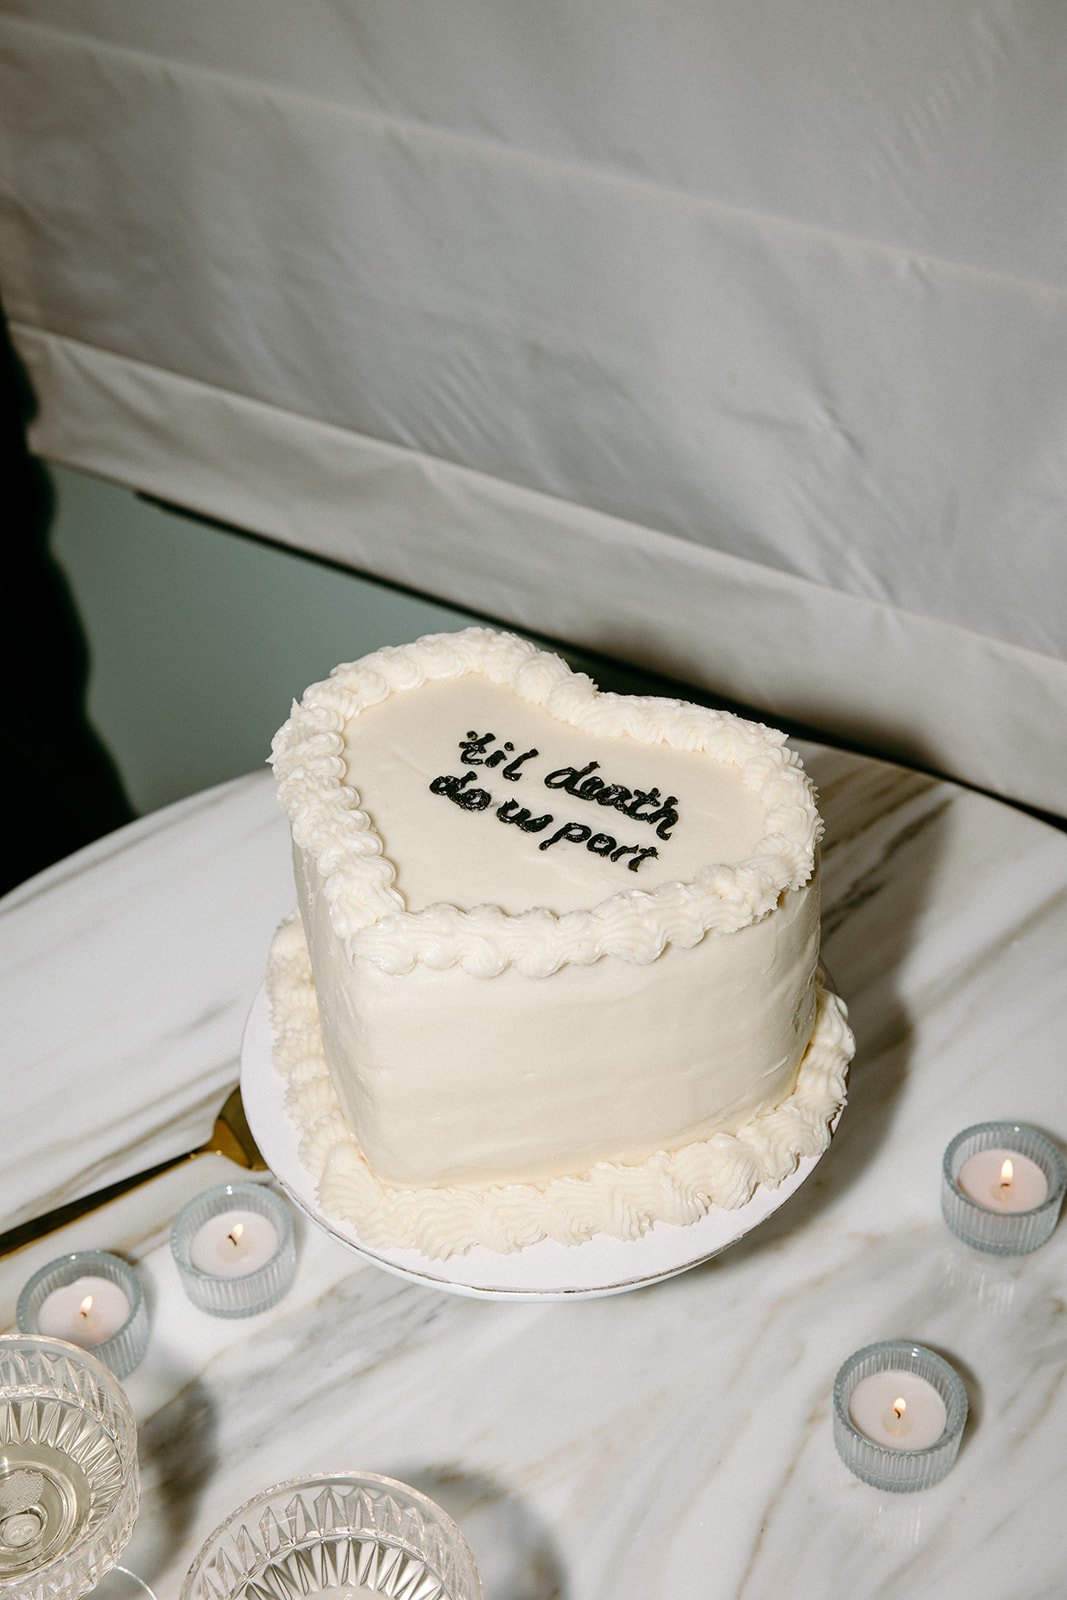 wedding cake reads: "til death due us part"